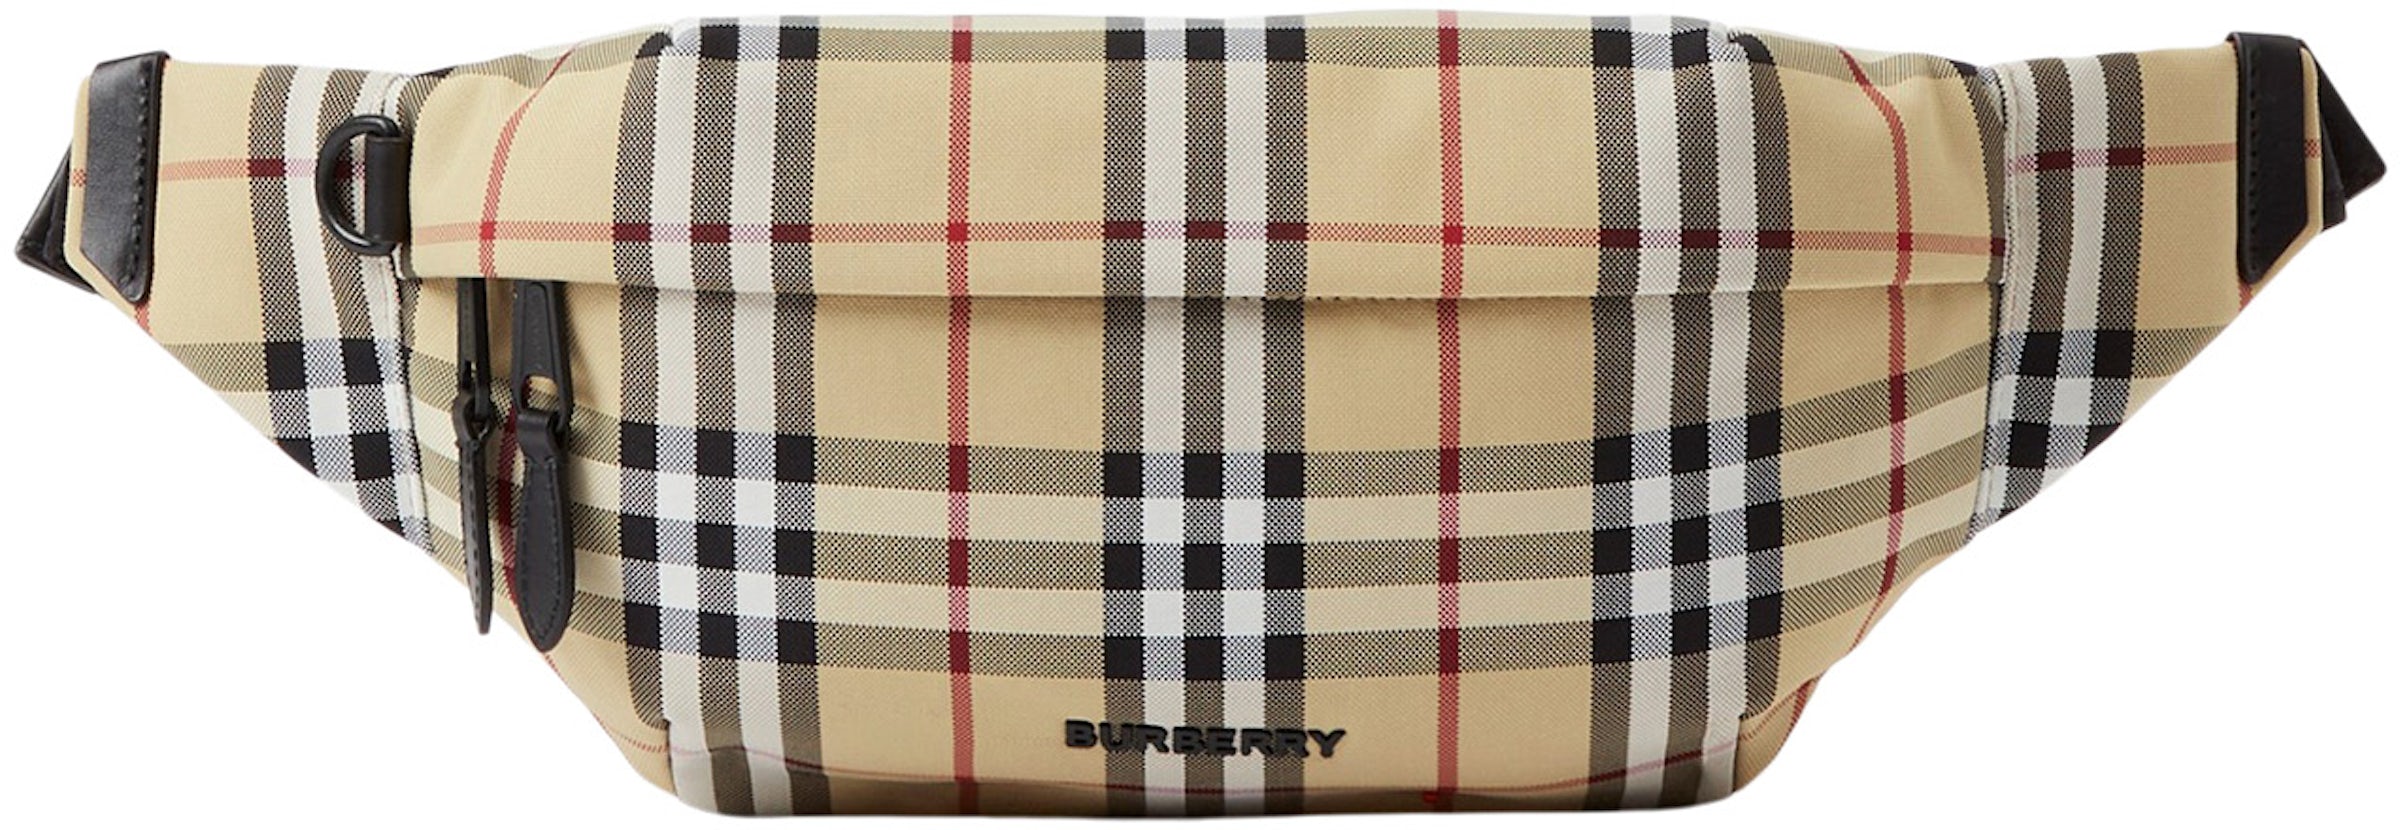 Sonny belt bag